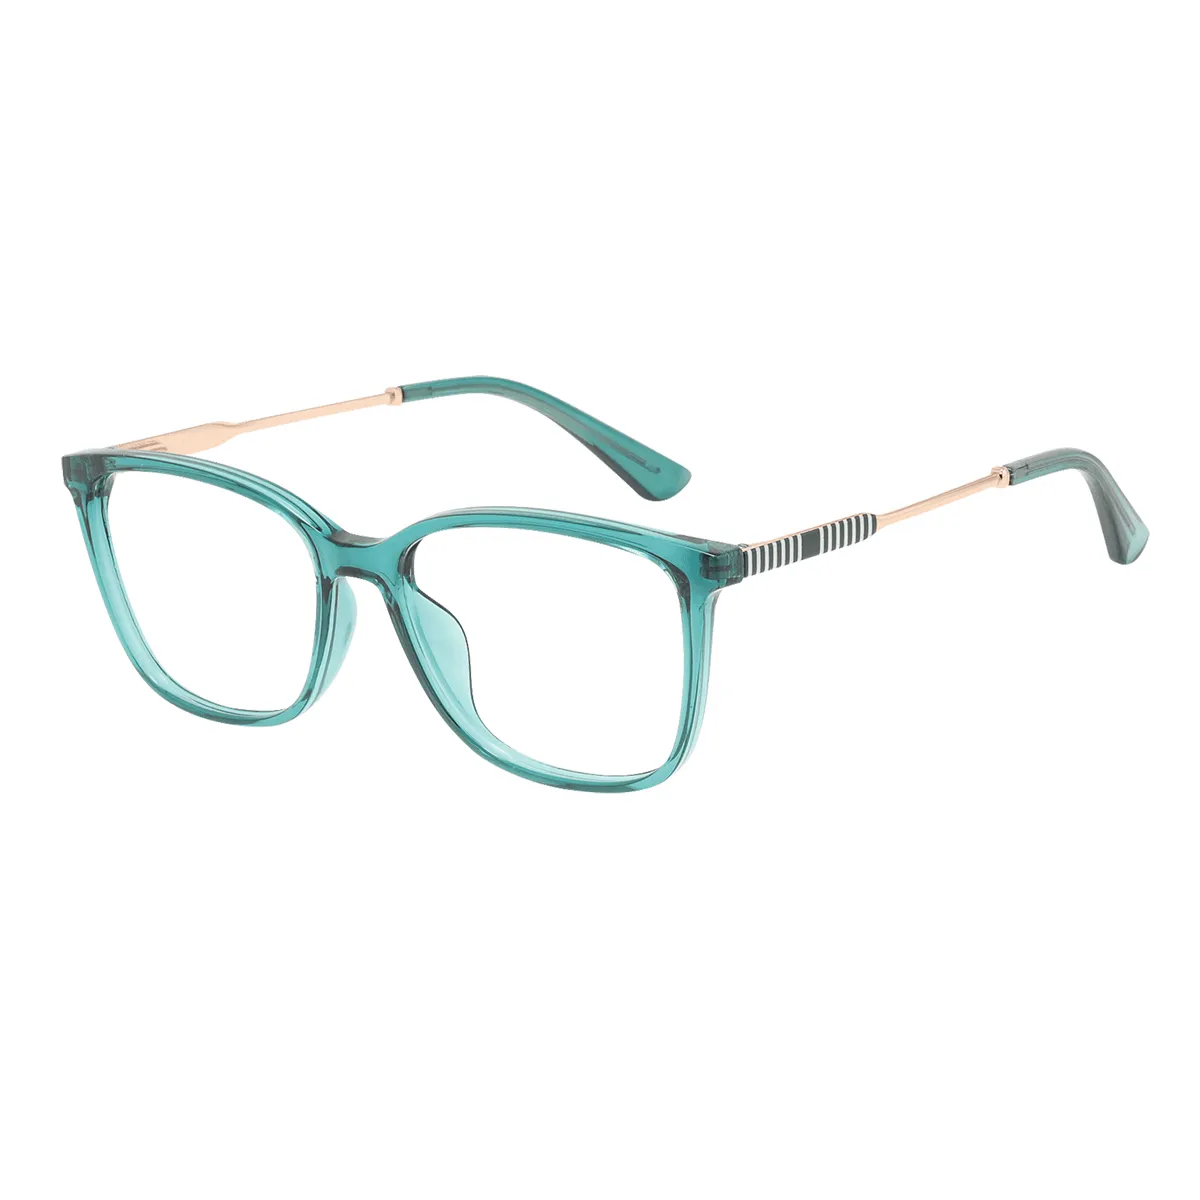 Huber - Square Green Glasses for Men & Women - EFE